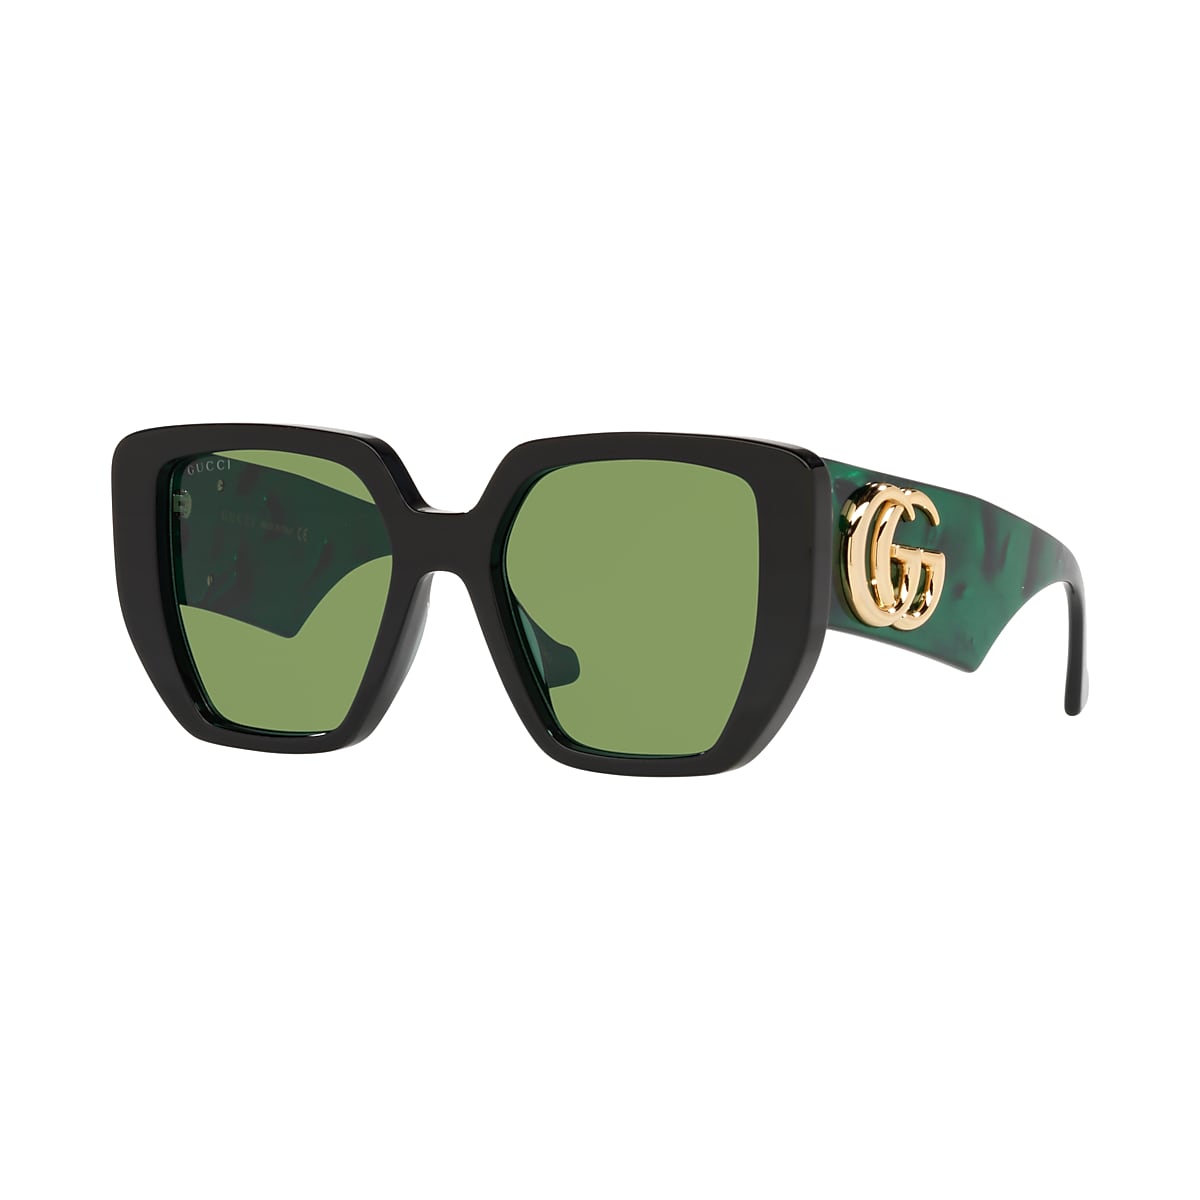 Sandalen Kracht meesteres Gucci GG0956S 54 Green & Black Sunglasses | Sunglass Hut USA